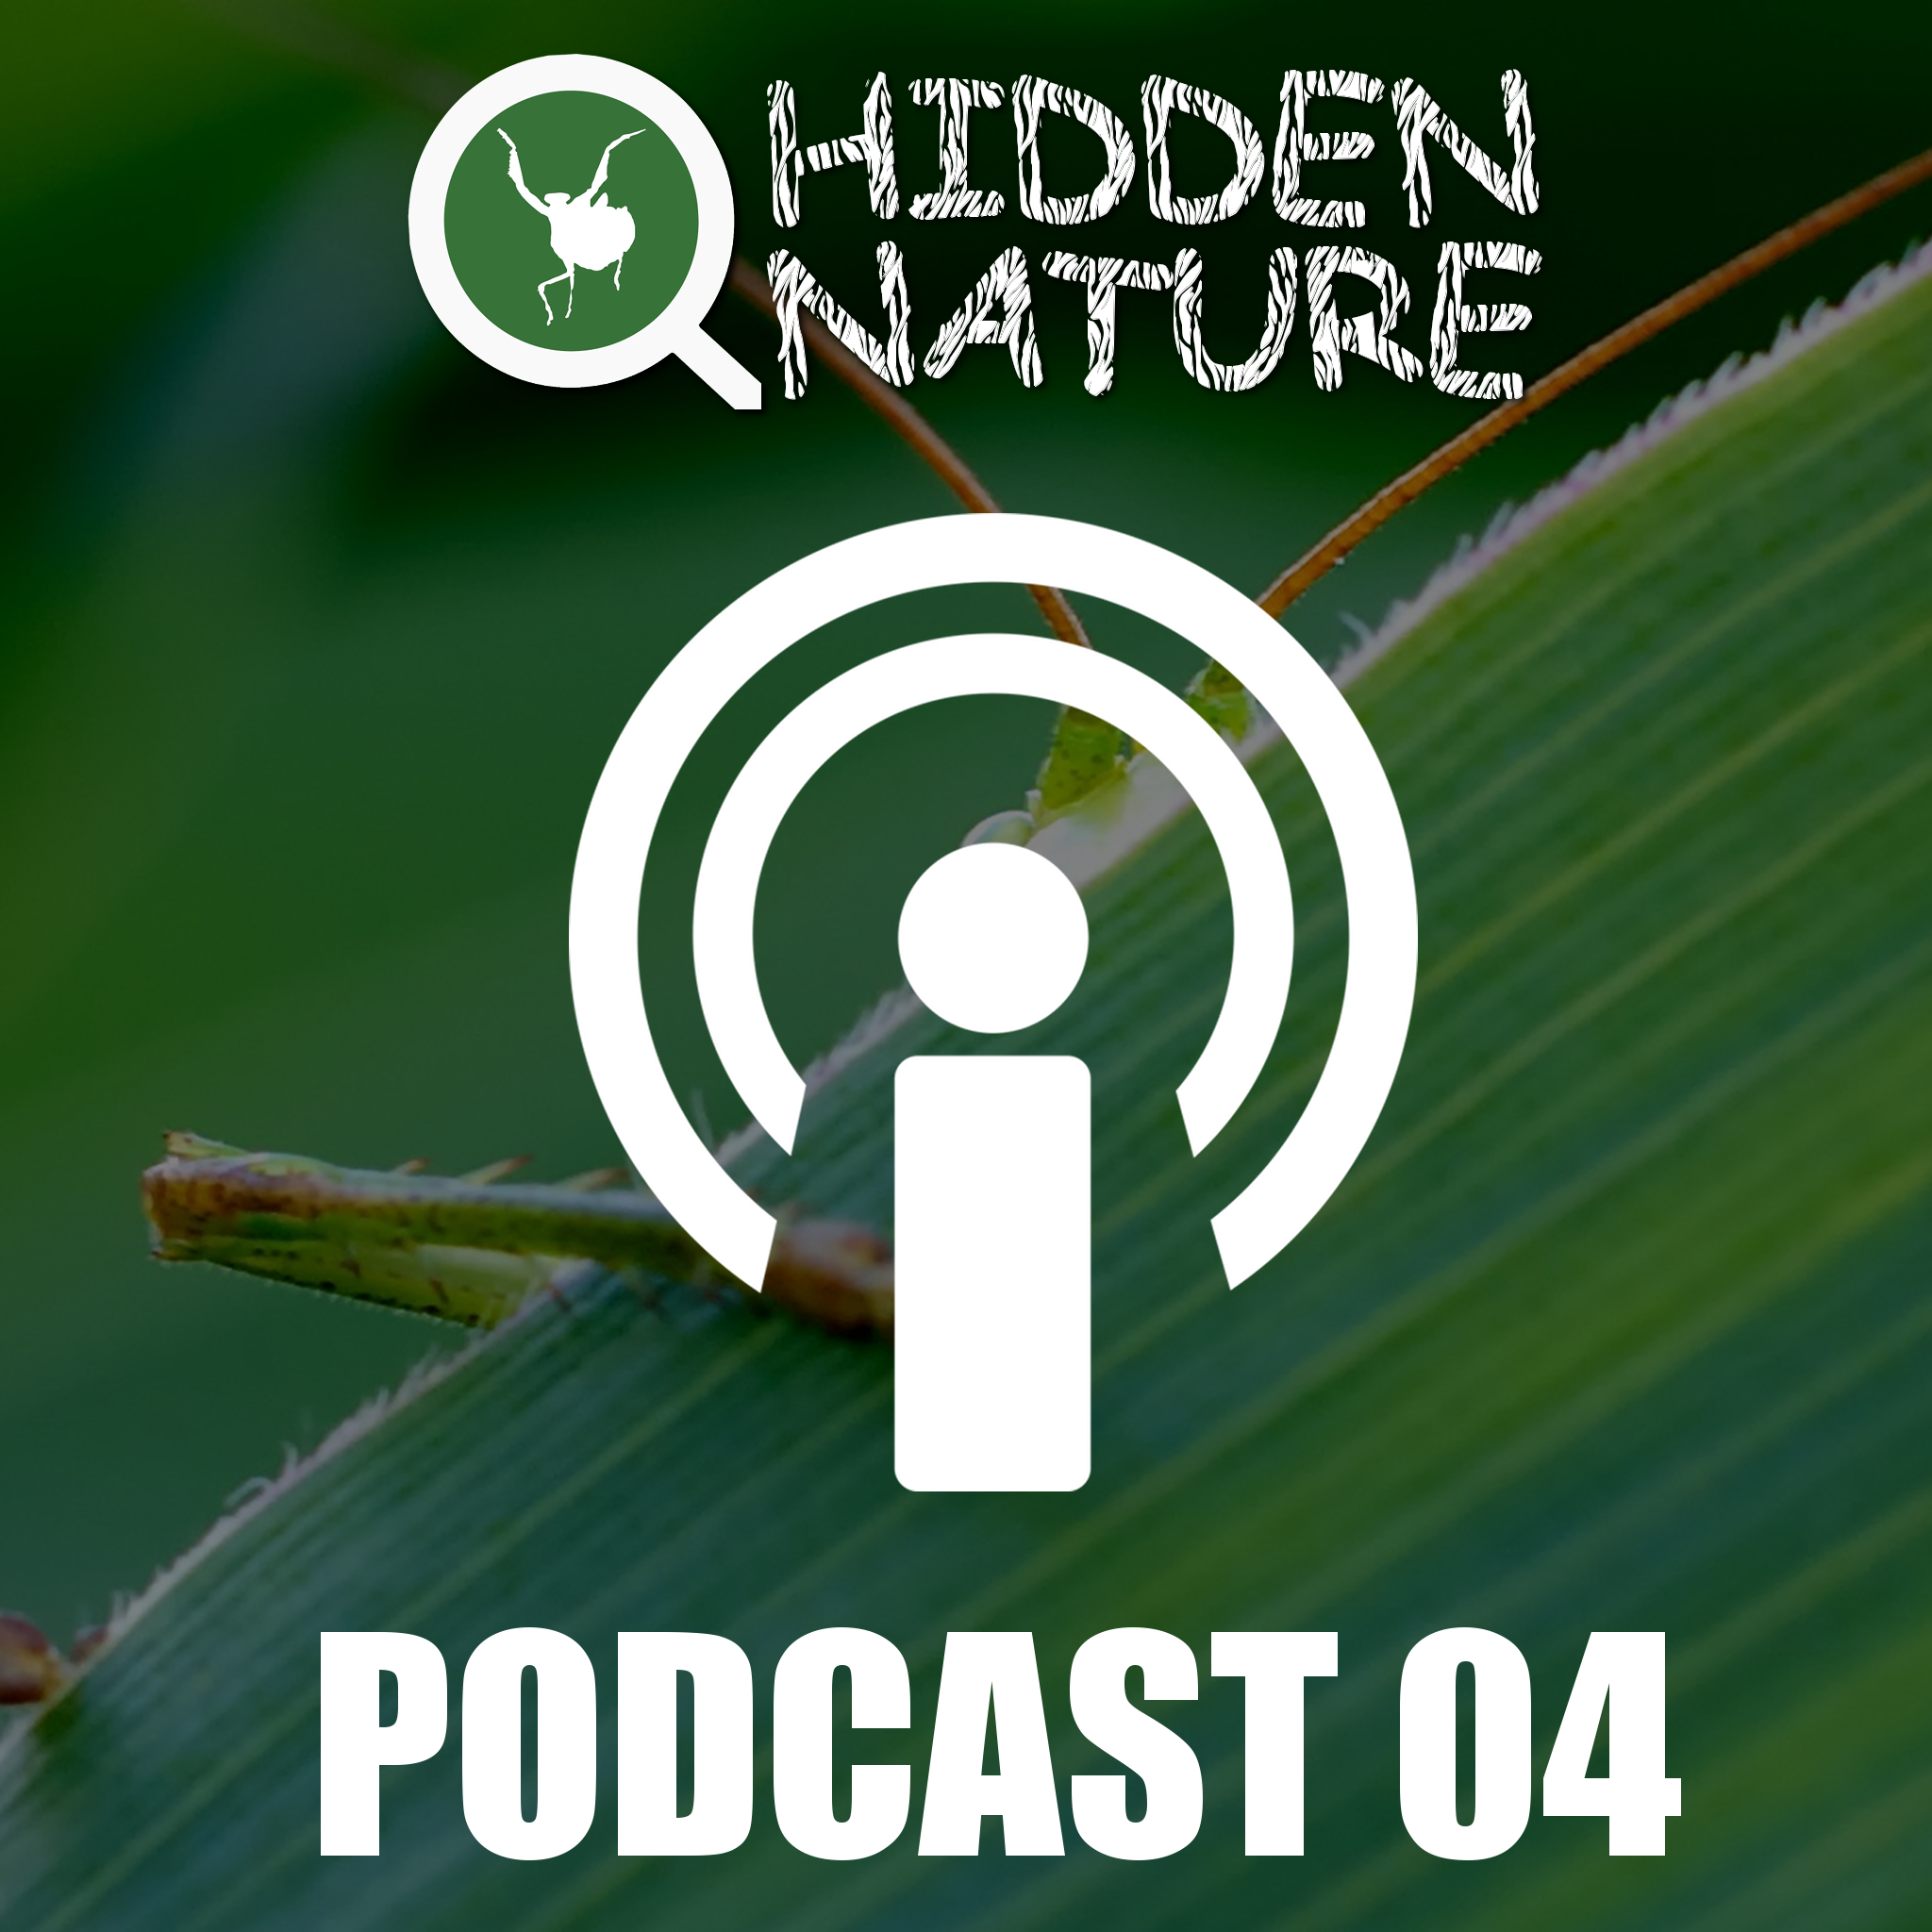 04 – Podcasts Hidden Nature – Nuestro amigo el ADN